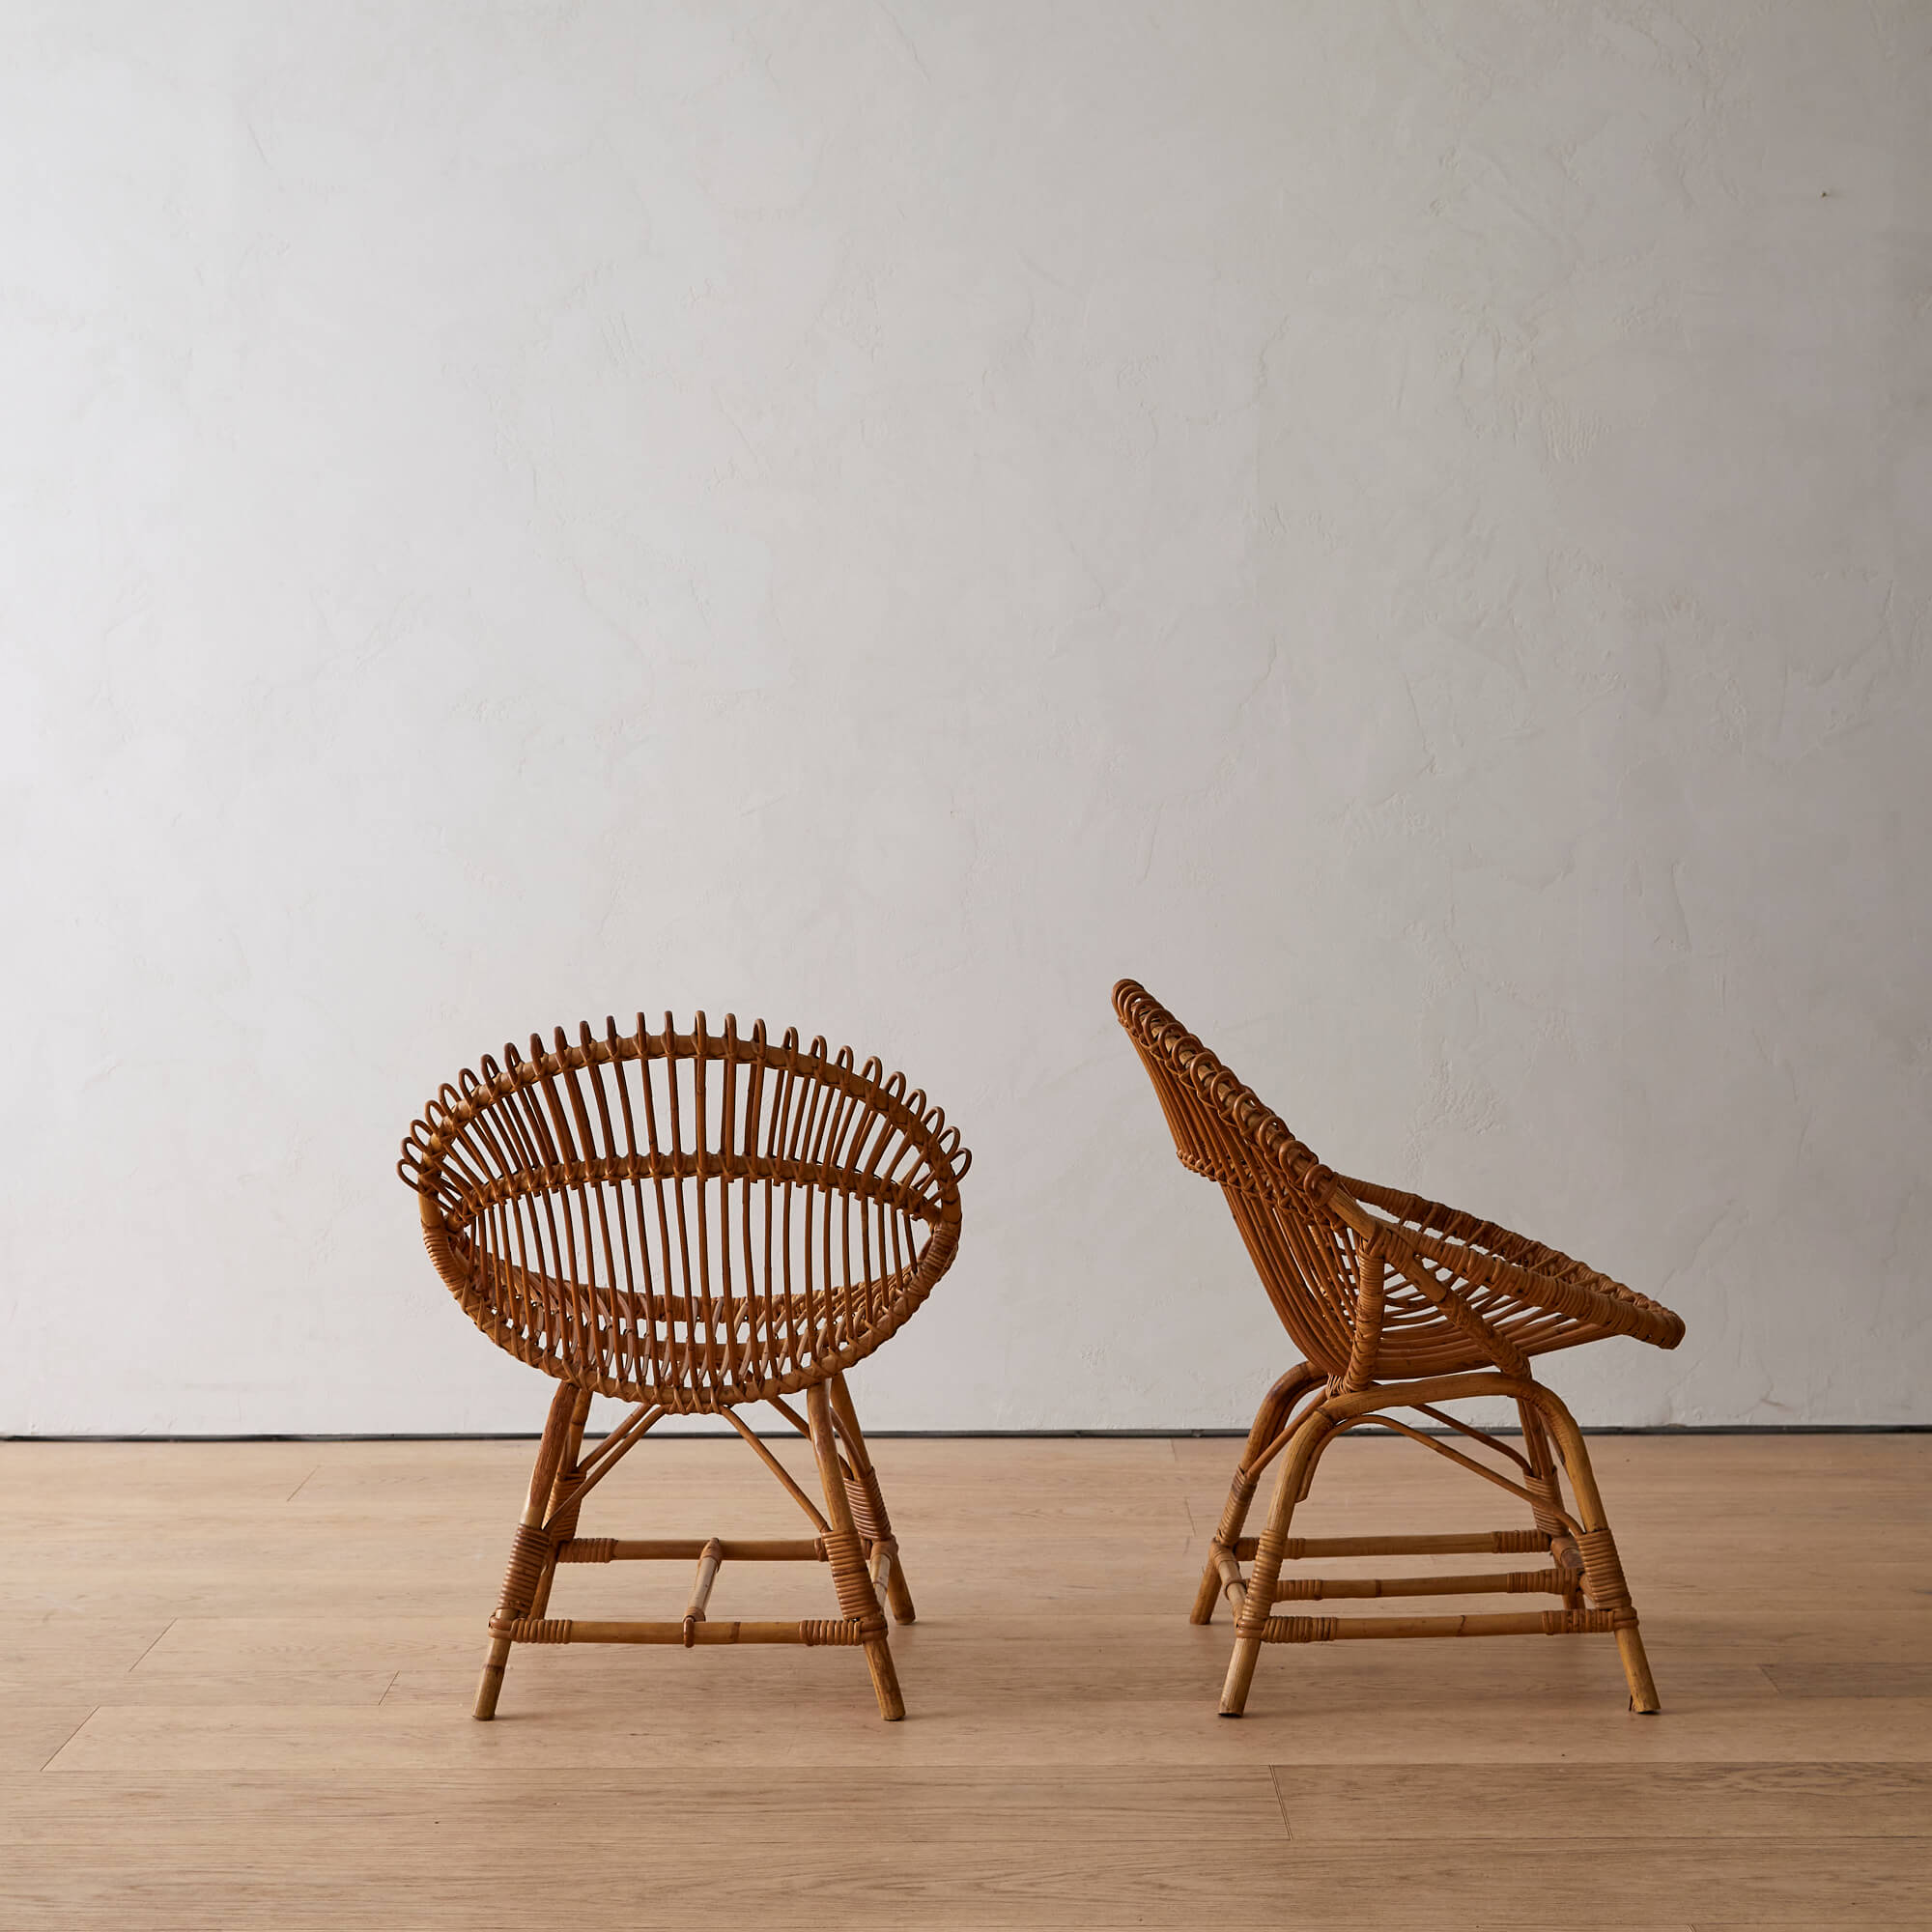 Pair of Franco Albini Rattan Chairs